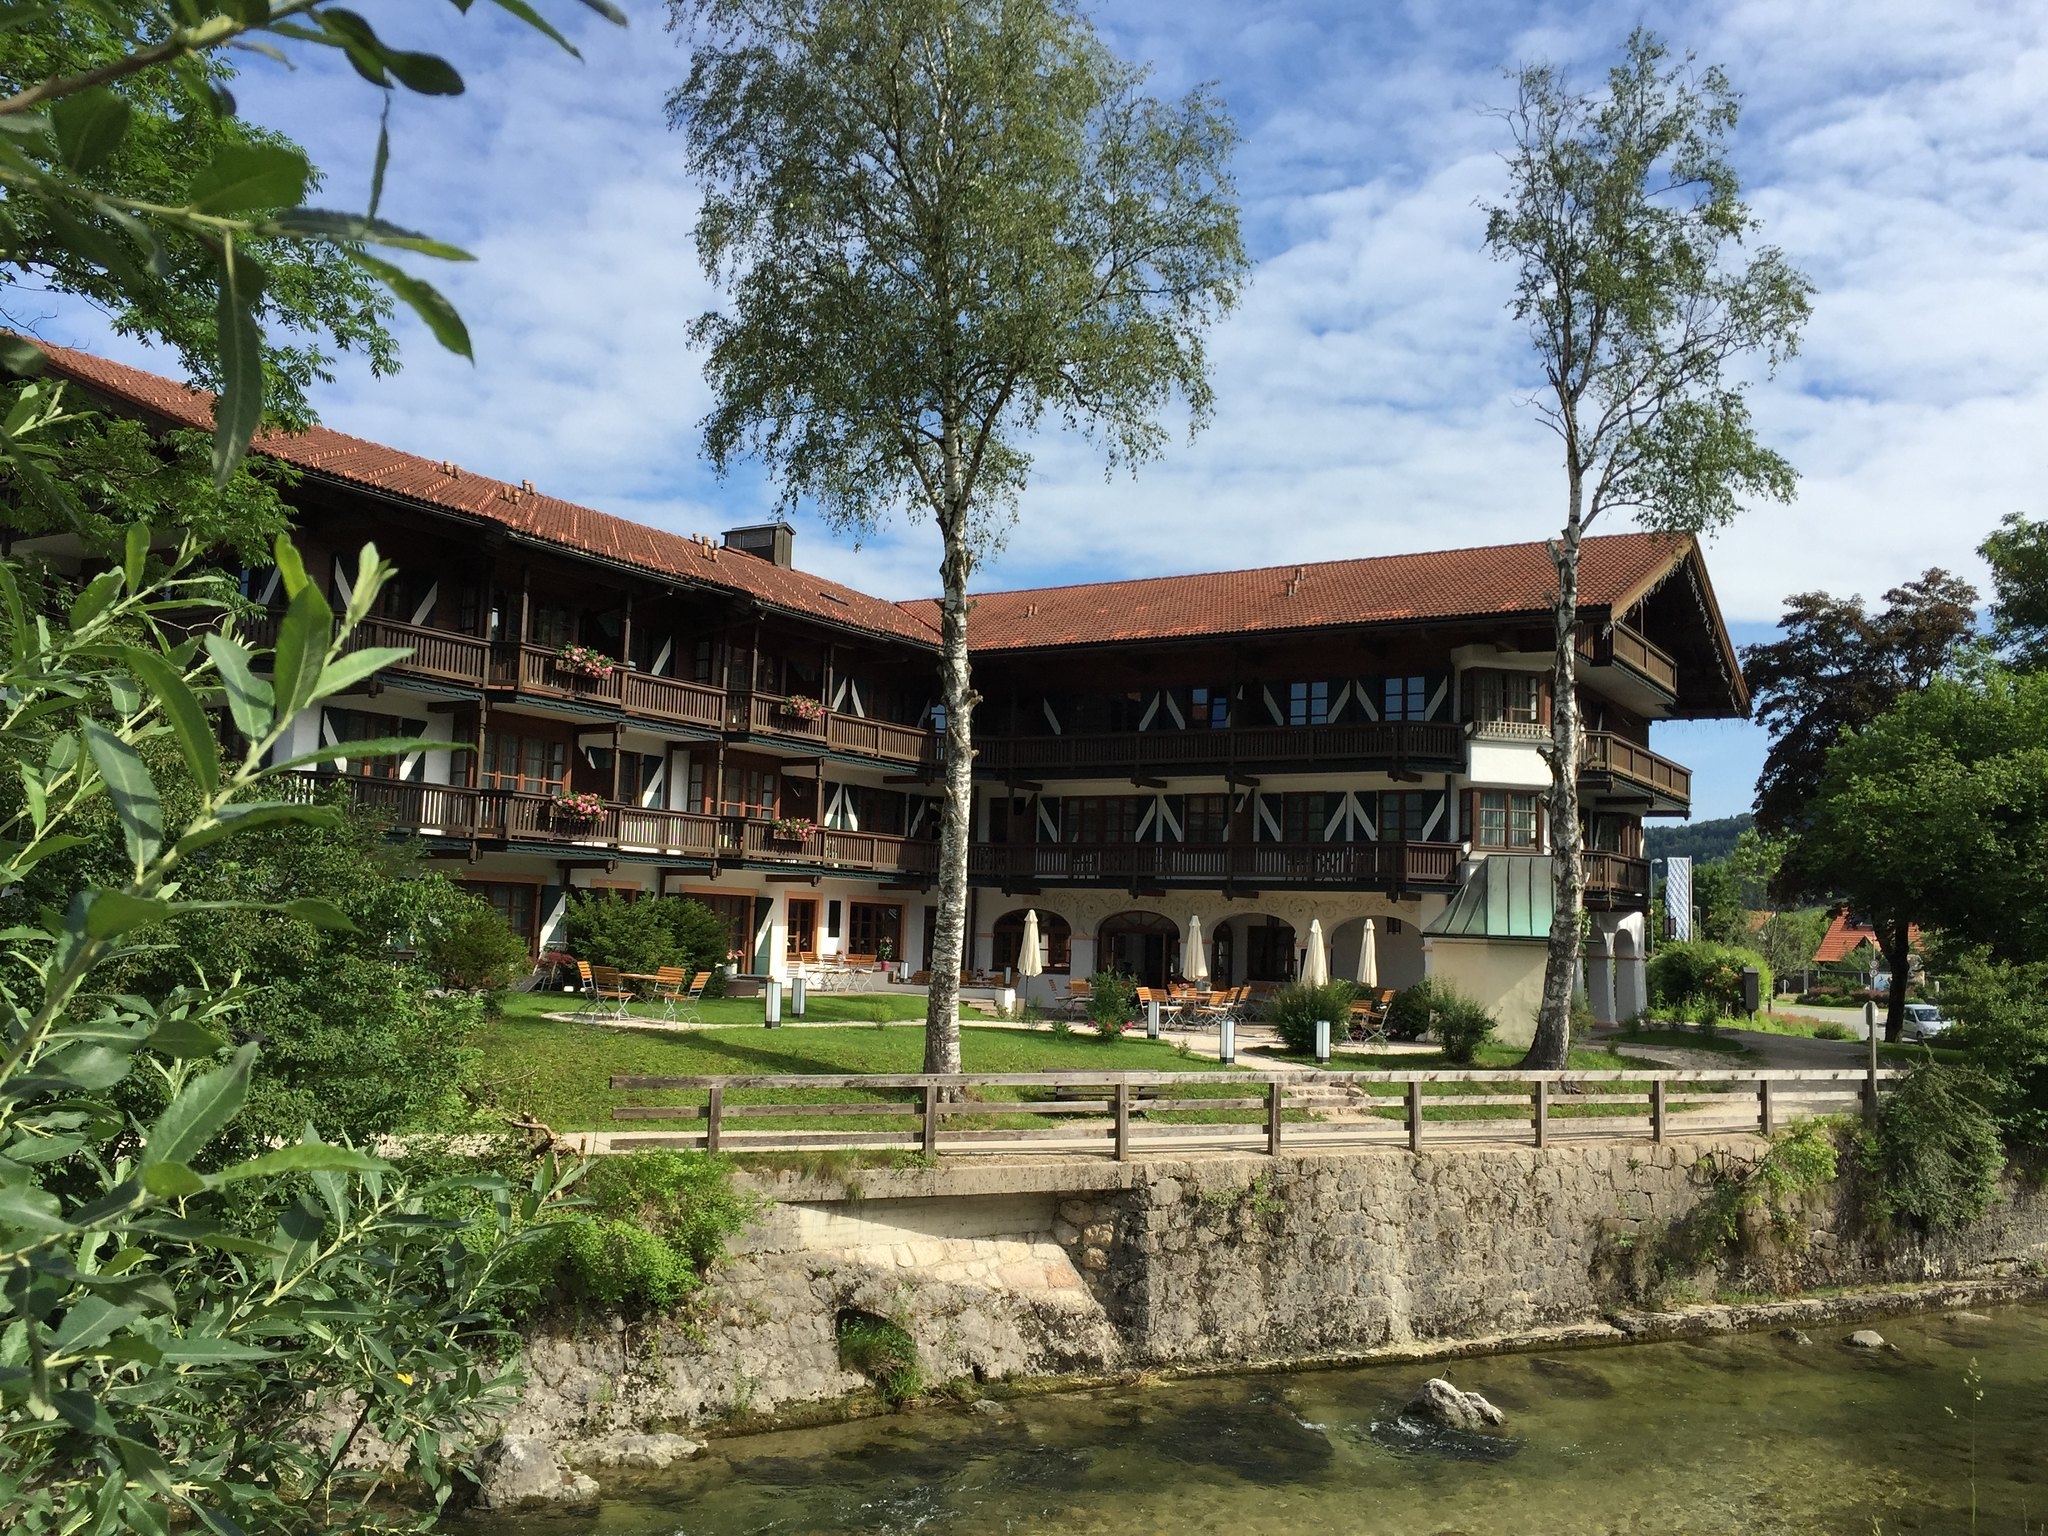 Frankfurt Chinesischer Garten Schön Hotels In Ruhpolding Bavaria top Deals at Hrs